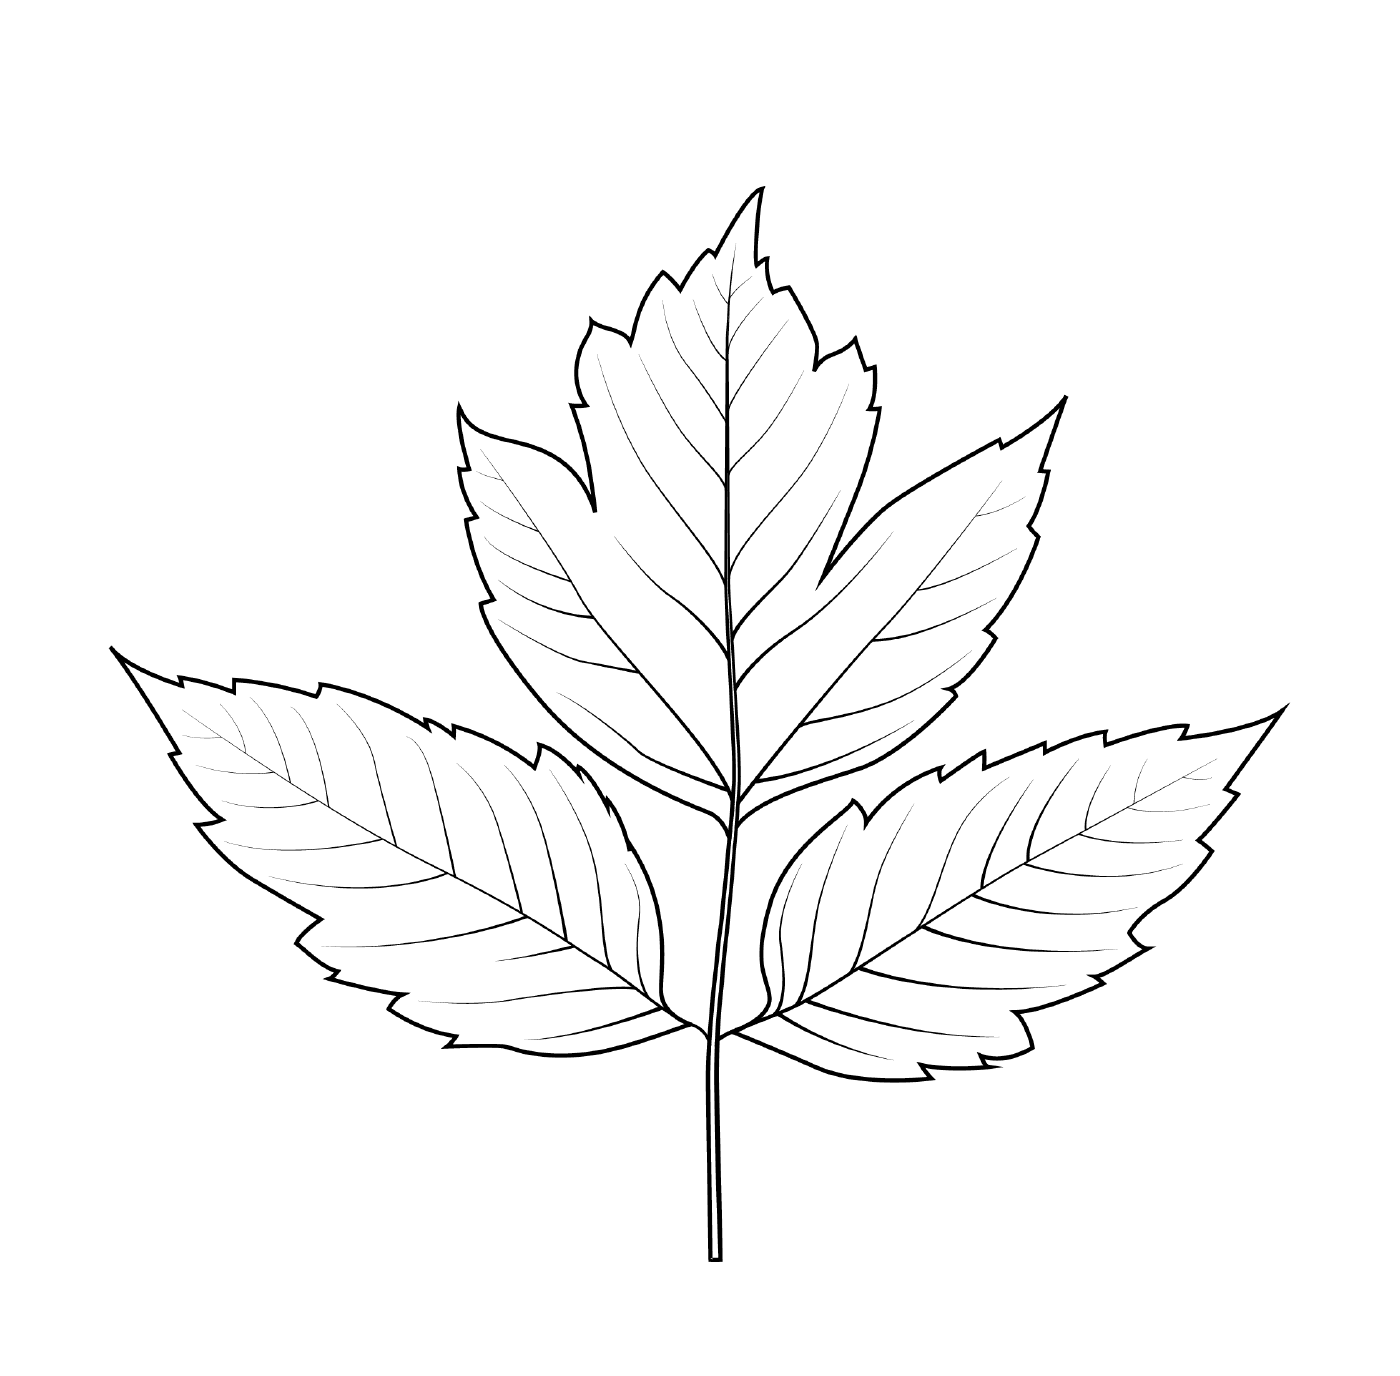  A leaf of elder 